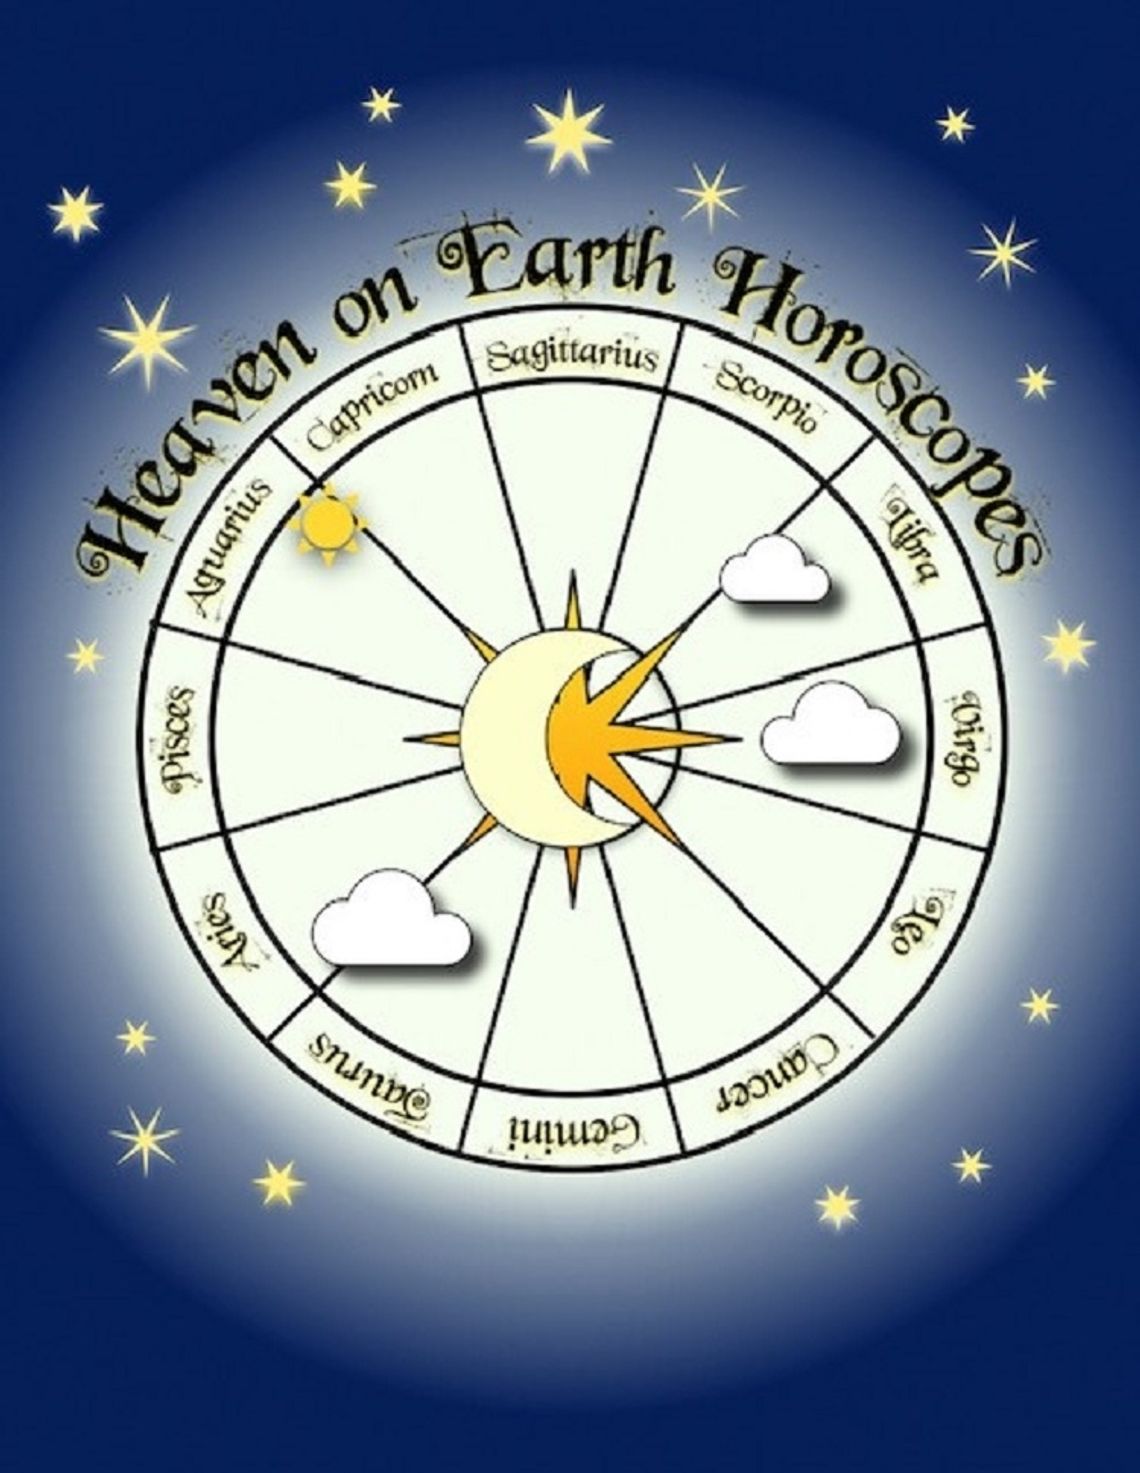 Heaven on Earth Horoscopes: January 20-26